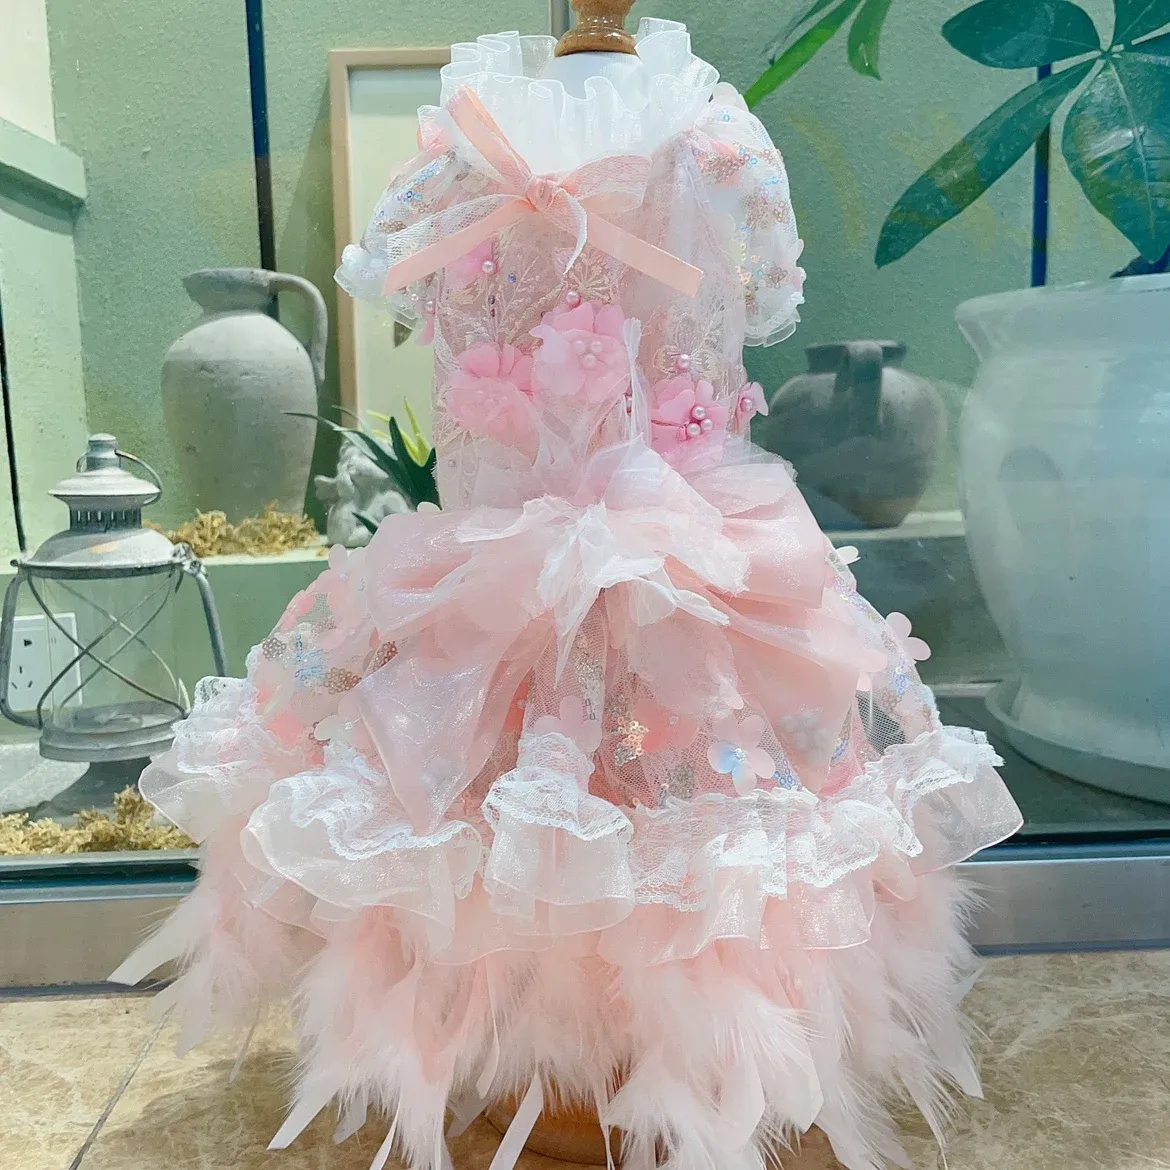 Klänningar rosa husdjurskläder fin lyxfjäder ihålig spets handgjorda bröllop prinsessa klänning för små medelstora hundar chihuahua valp kjol